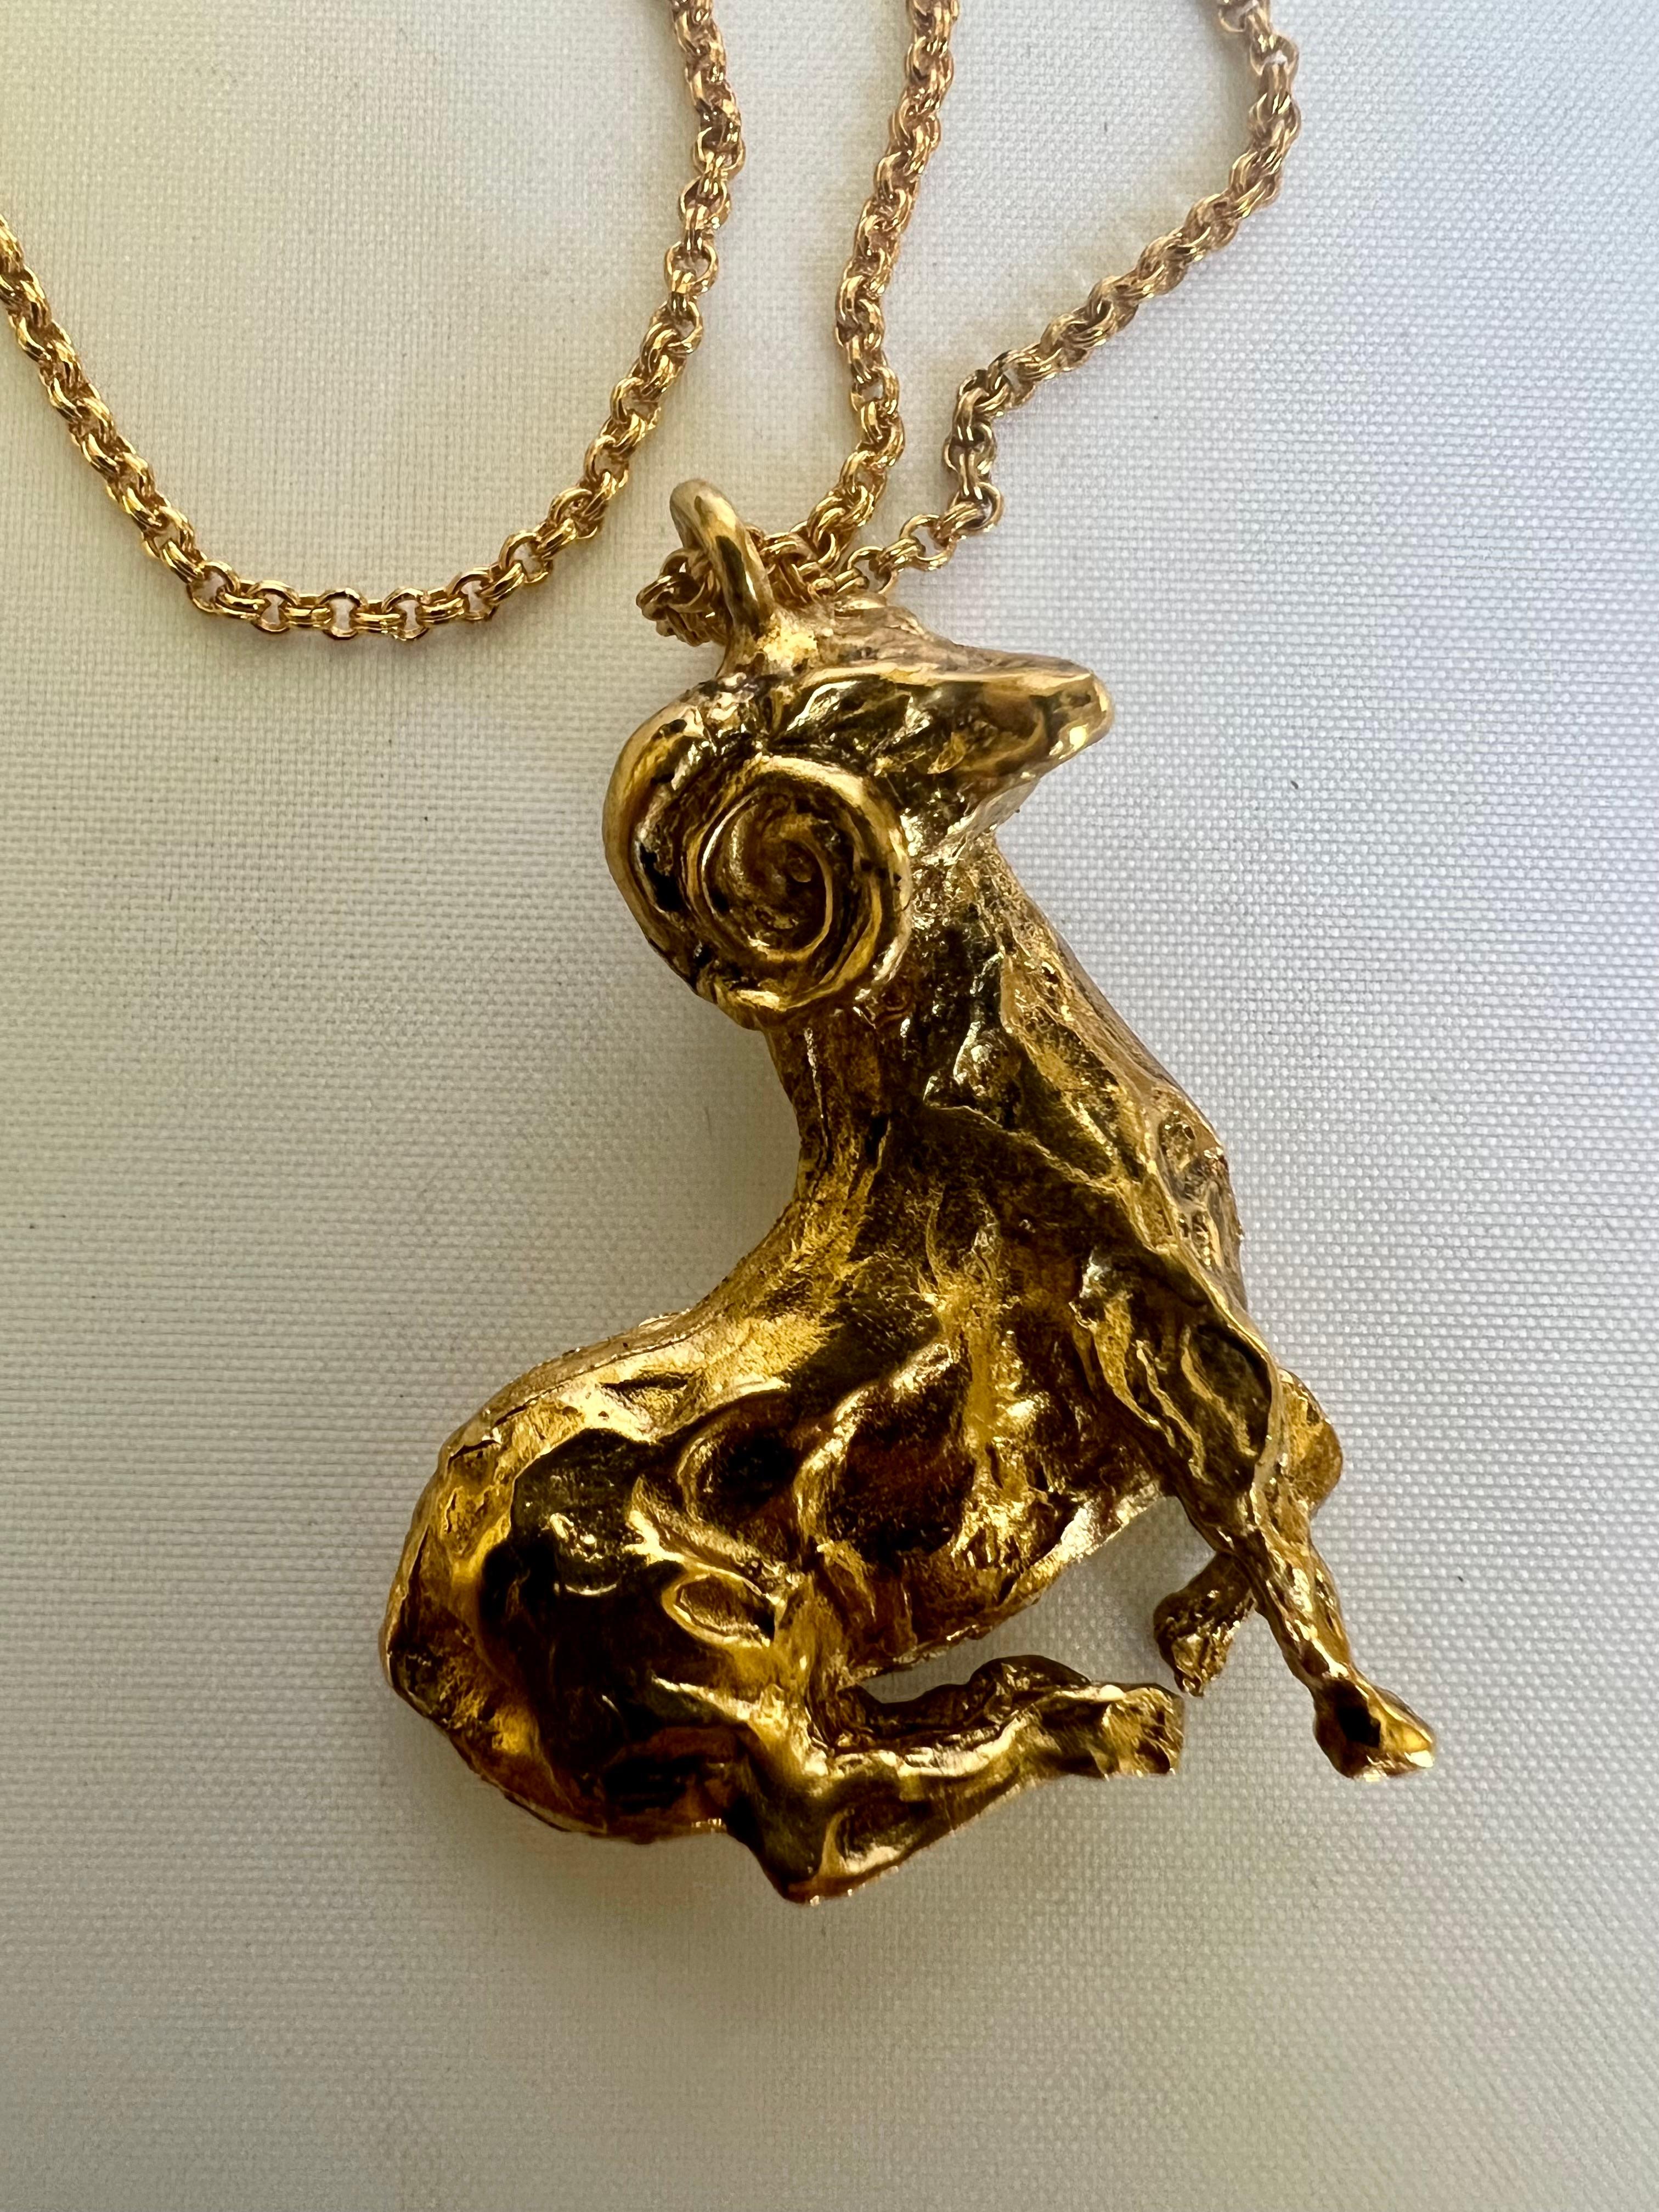 Collier pendentif Capricorne unisexe en bronze doré (plaqué or 18k) fabriqué artisanalement en France. 

La chaîne mesure 20 pouces de long, et le pendentif mesure 1,50 pouces par 1,25 pouces.